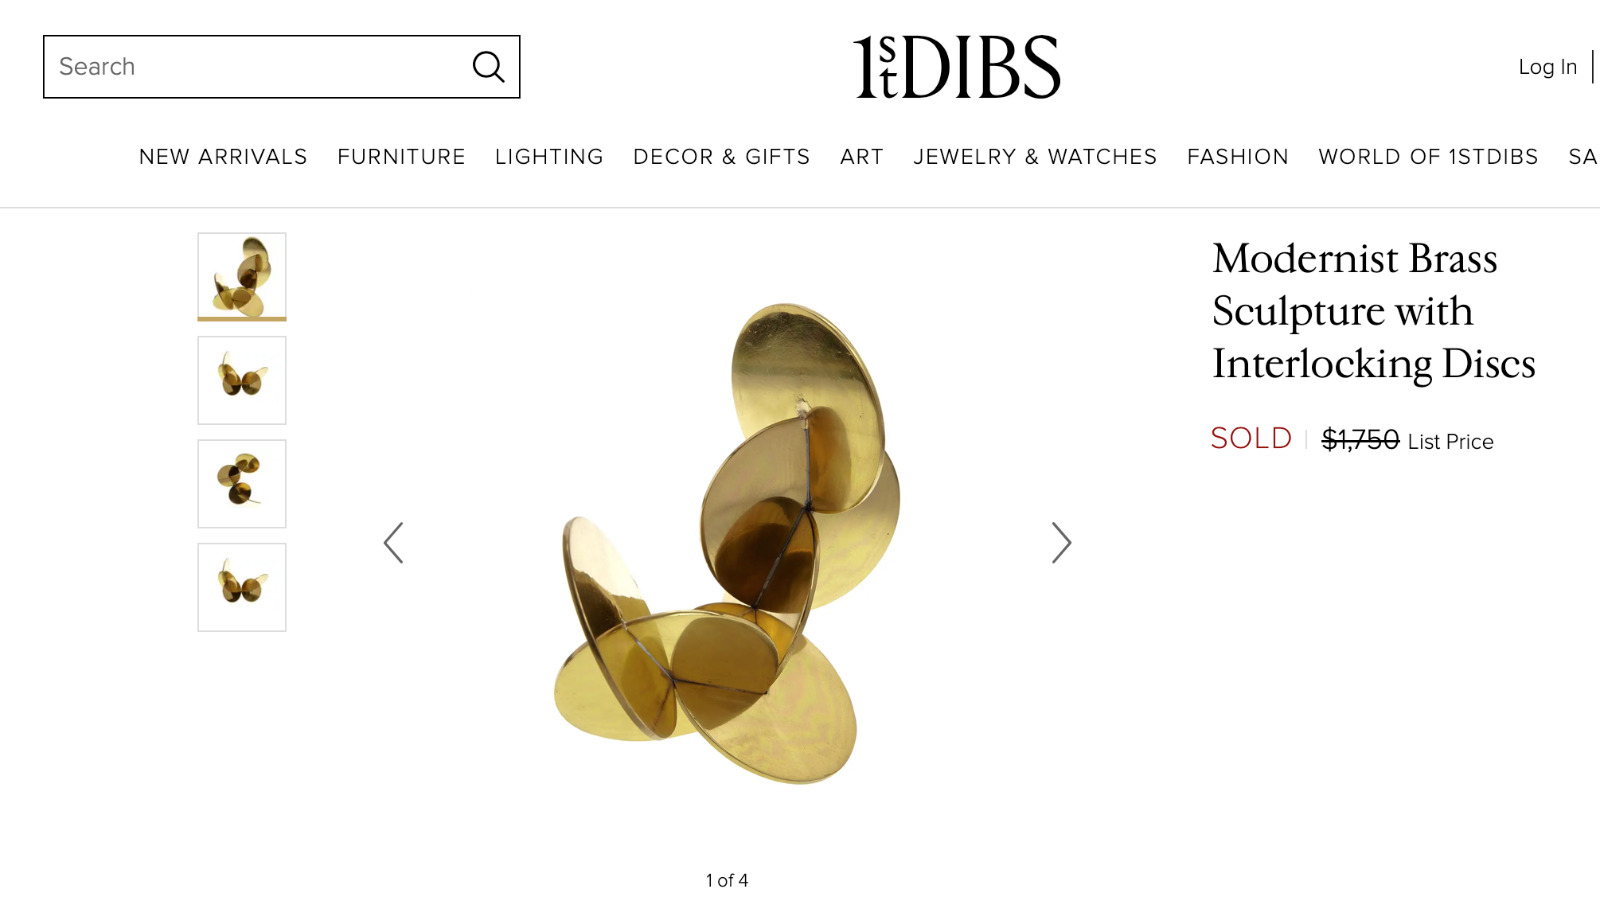 Modern Brass Sculpture with Interlocking Discs